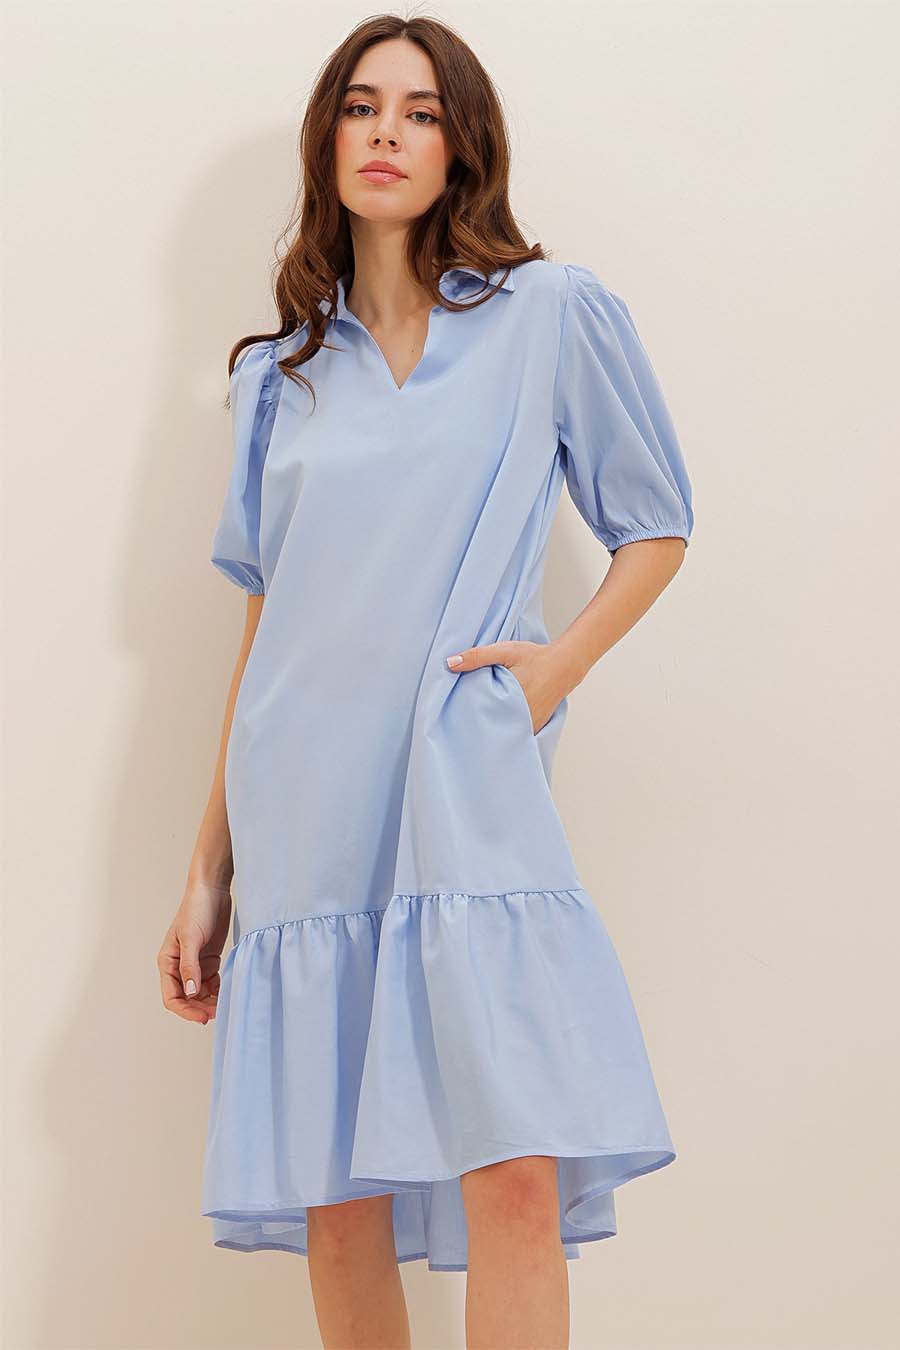 Γυναικείο φόρεμα Kiri, Γαλάζιο 4